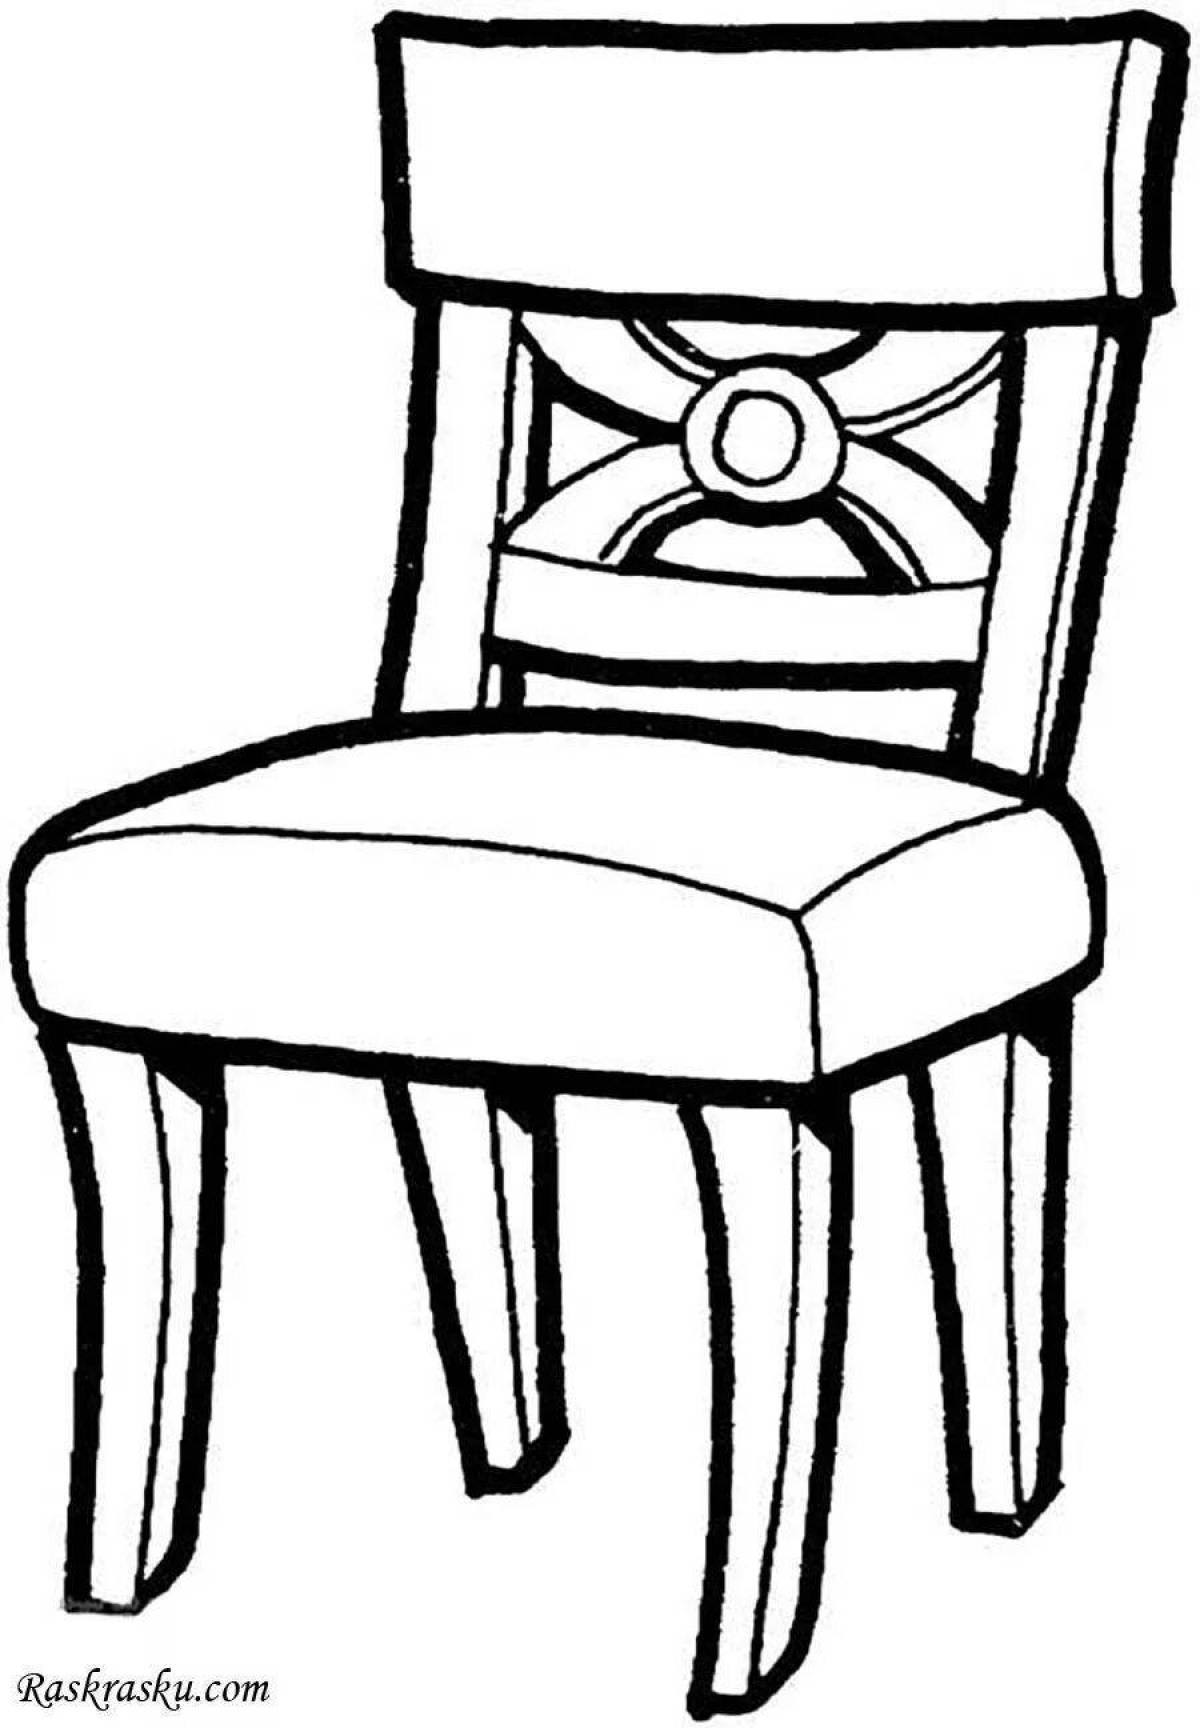 Раскраска «сумасшедший стул» для детей 3-4 лет